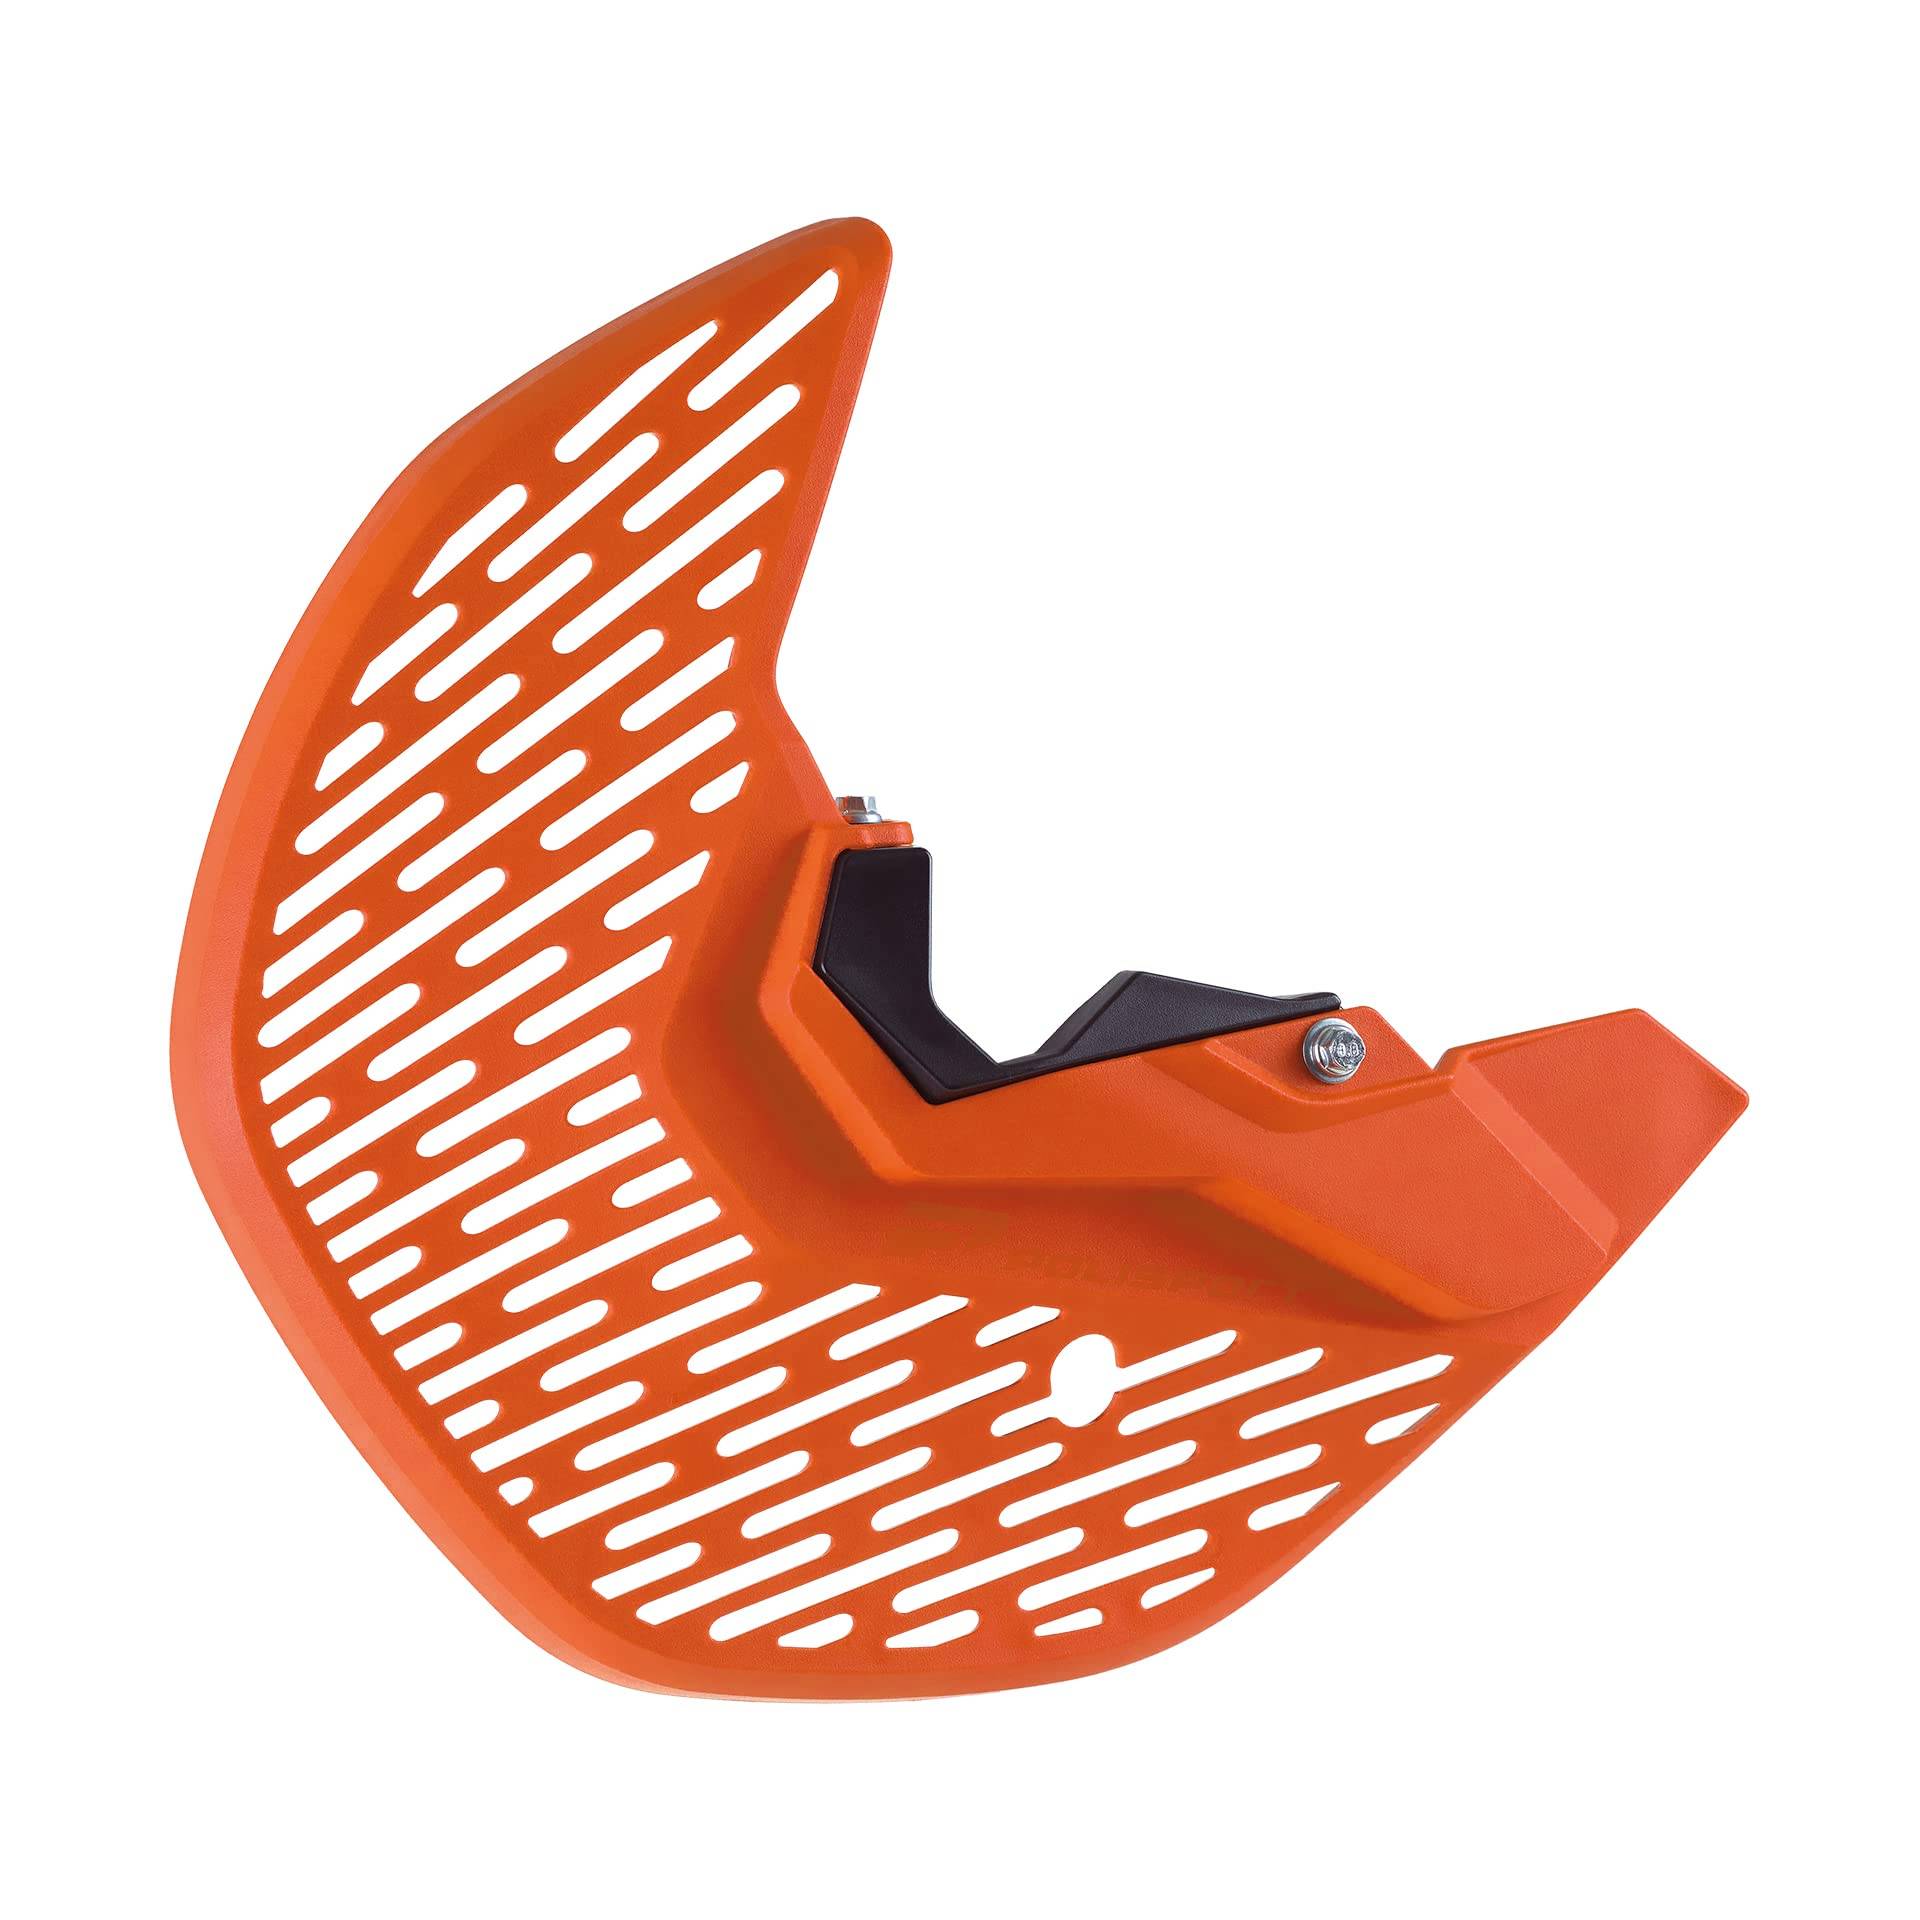 POLISPORT 8158500003 - Untere Gabel und MX-Scheibenschutz aus schlag- und abriebfestem Kunststoff kompatibel mit Motorrädern KTM in Farbe Orange von Polisport